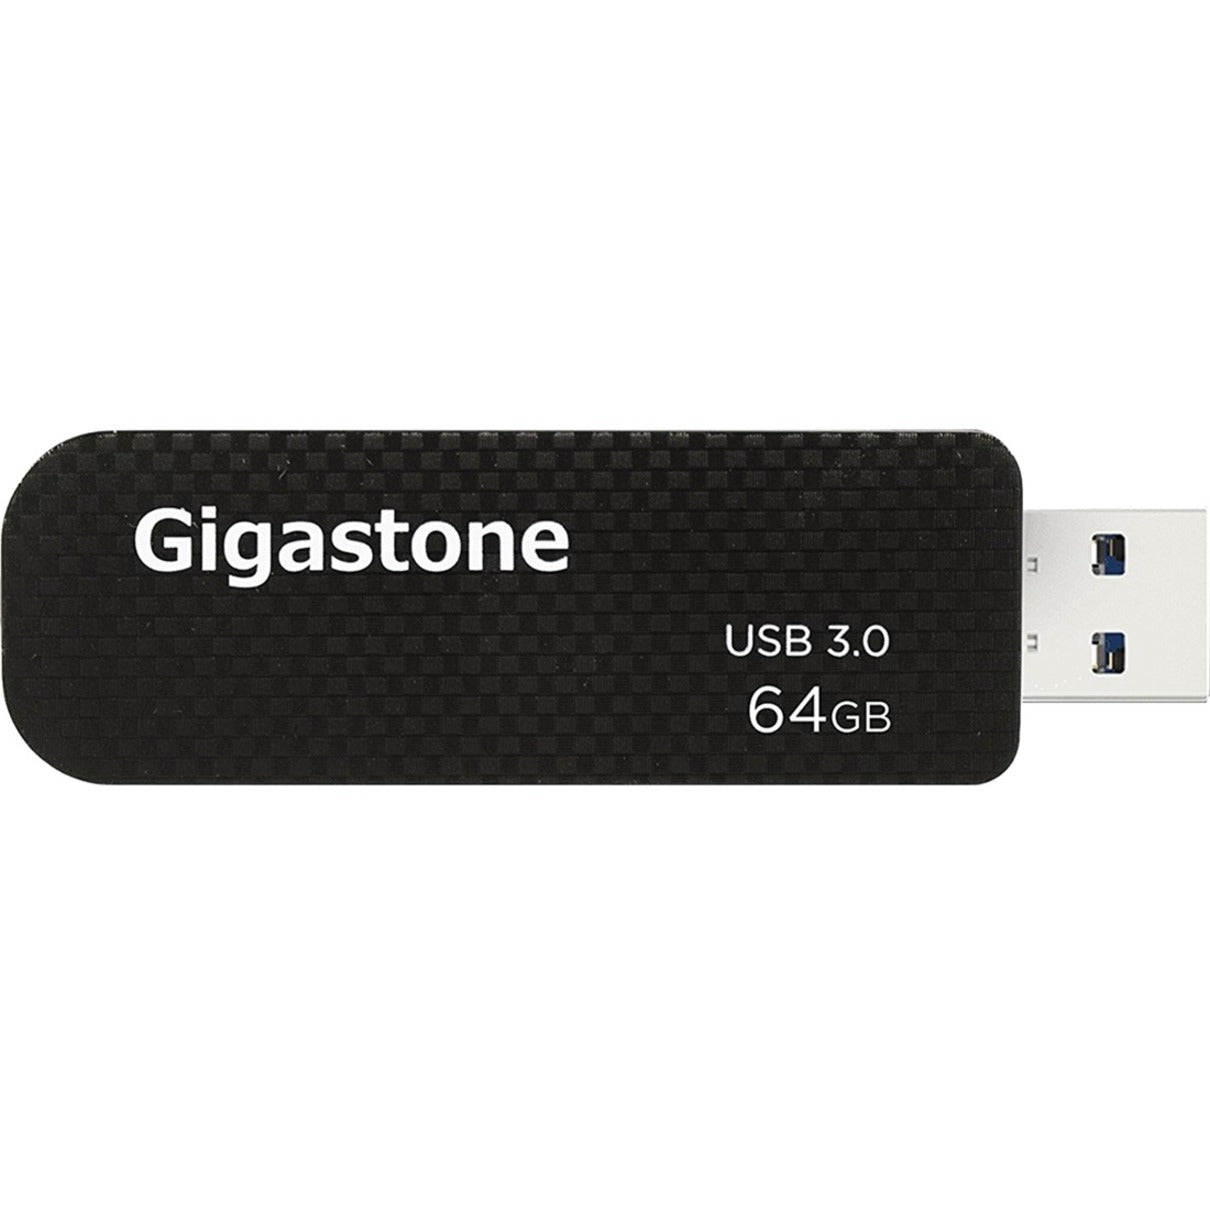 Gigastone GS-U364GSLBL-R Dane-Elec 64GB USB 3.0 Flash Drive, High-Speed Data Transfer and Portable Storage